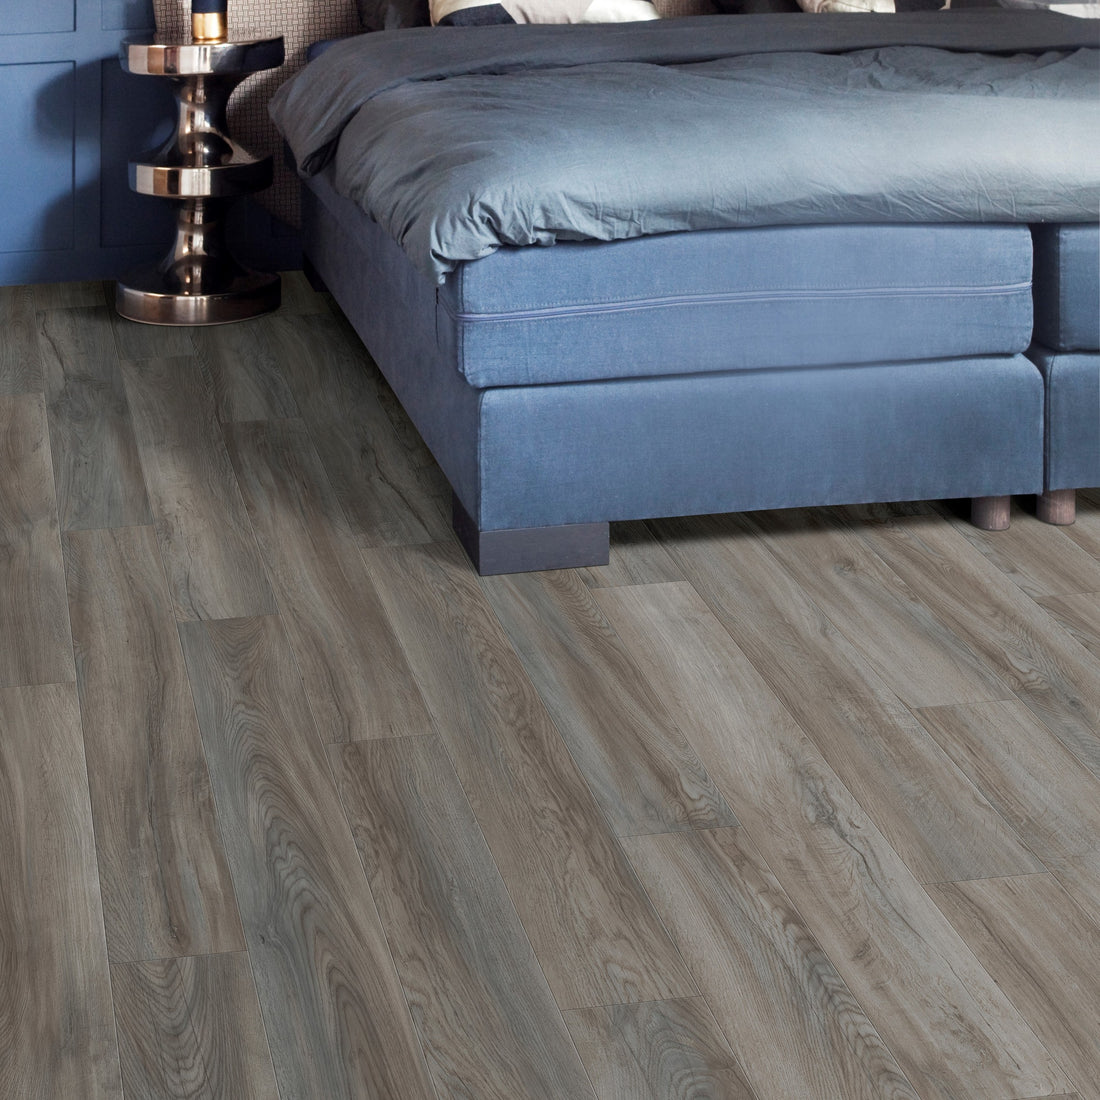 Kompact KlickFloor - Huckleberry Dark Smoke Oak vinyl bedroom flooring with bed and stand 82941